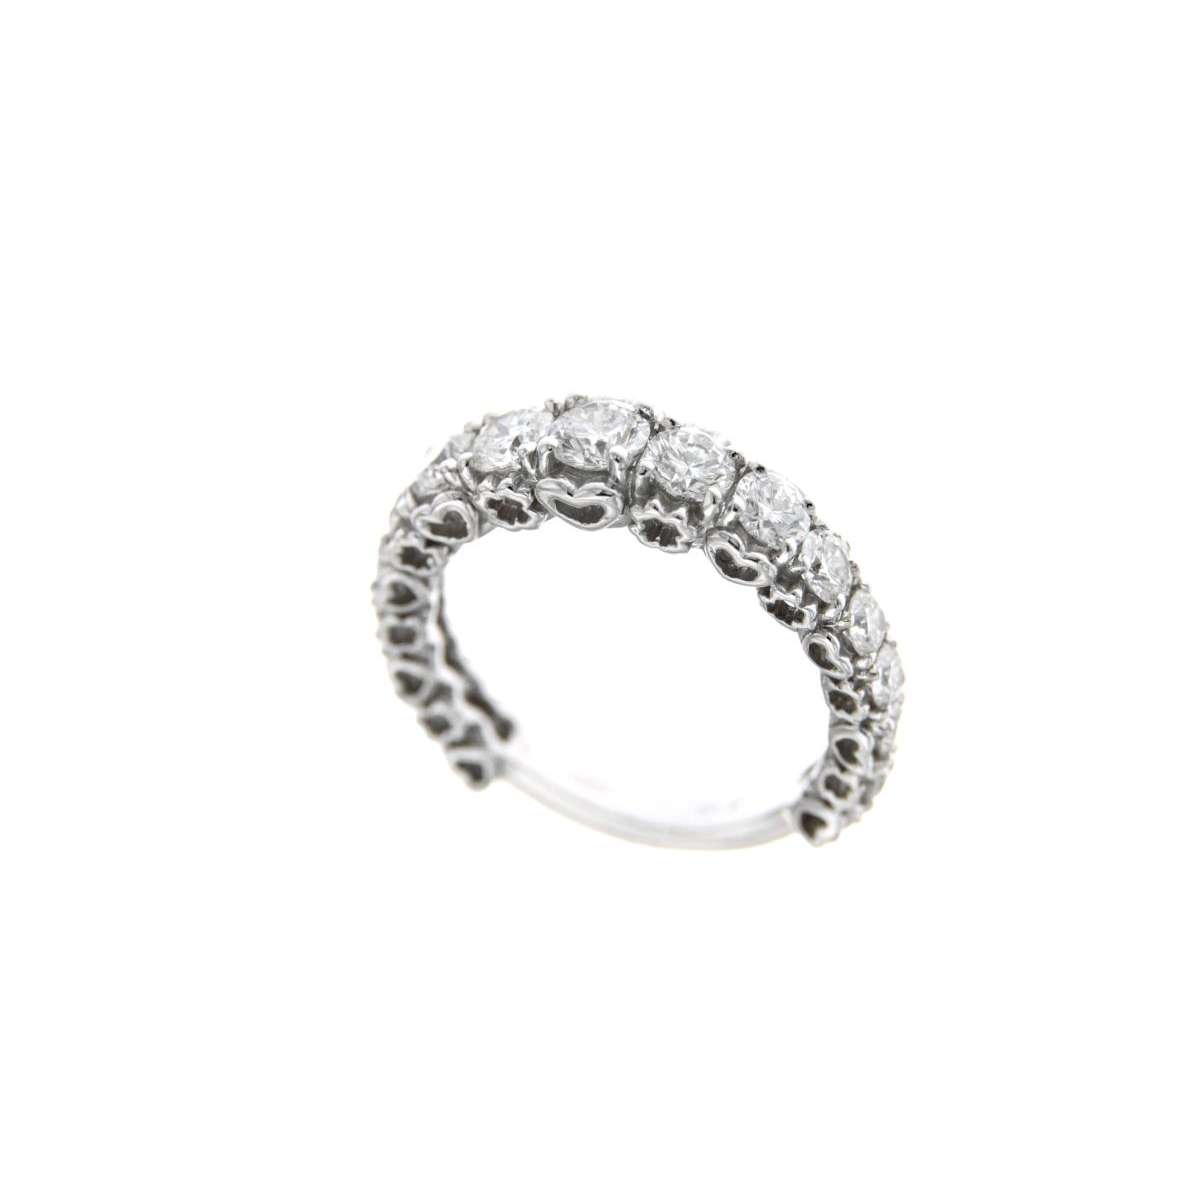 Eternity ring in white gold diamonds carat 2.07 g-vs1